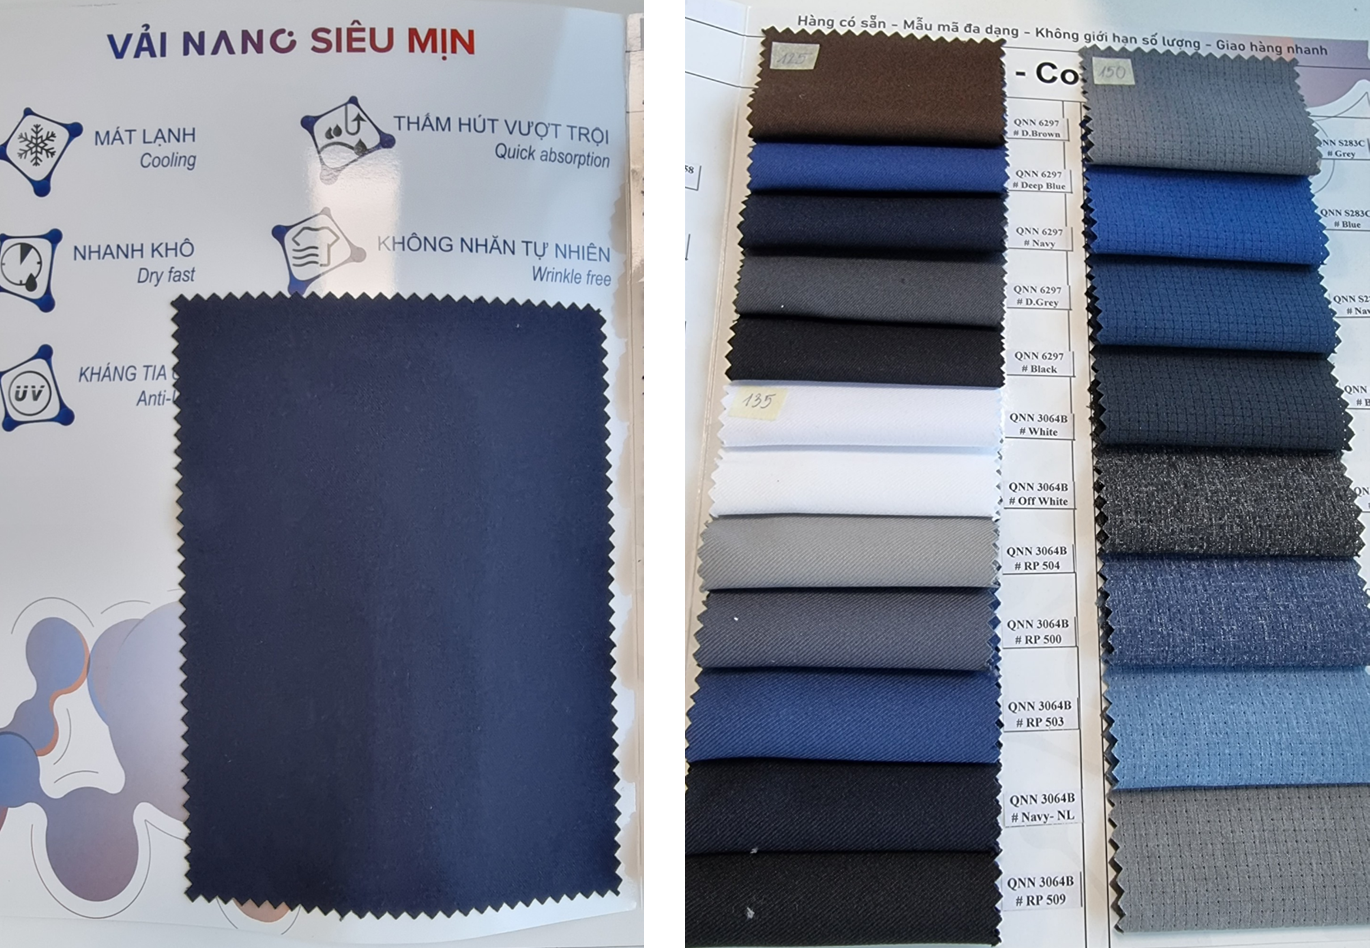 Vải Nano cũng là dòng chất liệu với ưu điểm nổi trội khi ứng dụng vào may đồng phục lễ tân cao cấp..